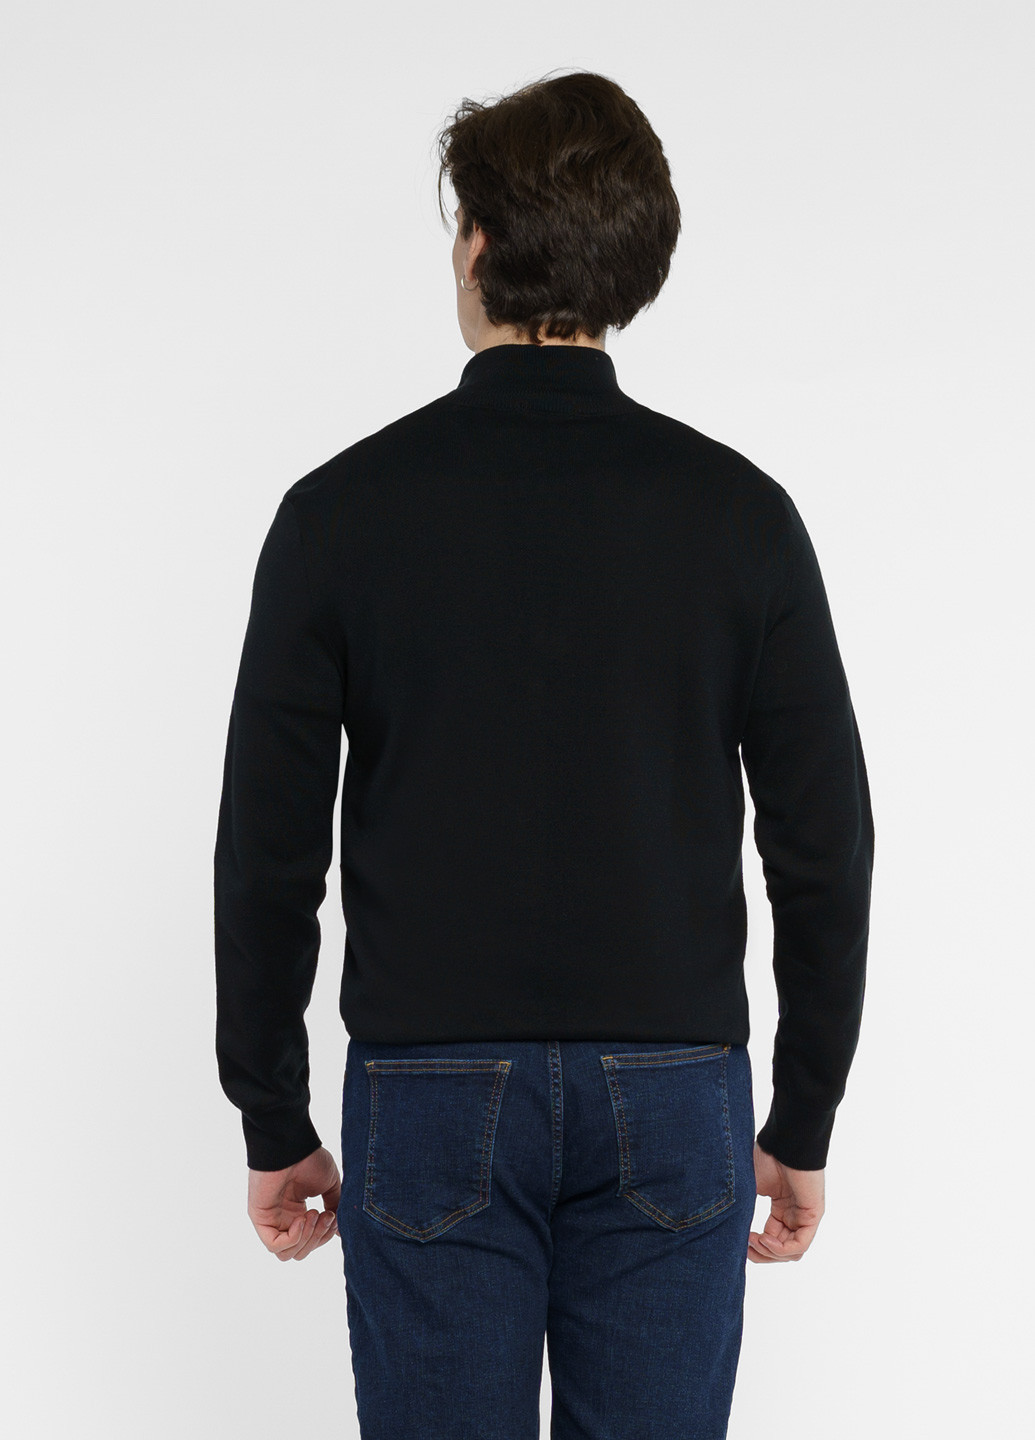 Черный демисезонный свитер мужской черный Arber Zipper-Neck N-AVT-74